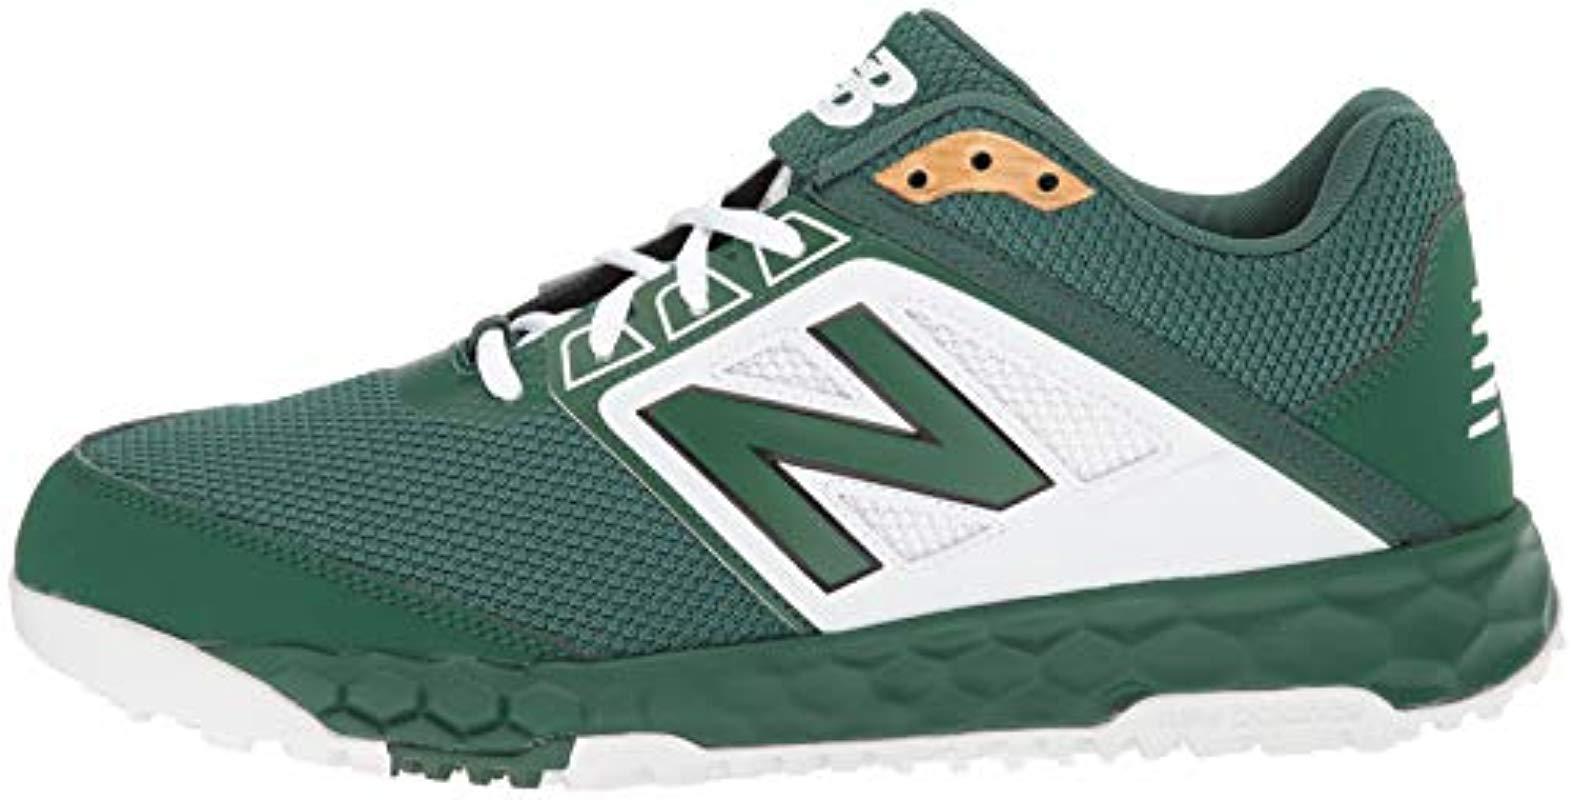 Lyst - New Balance 3000v4 Turf Baseball Shoe in Green for Men